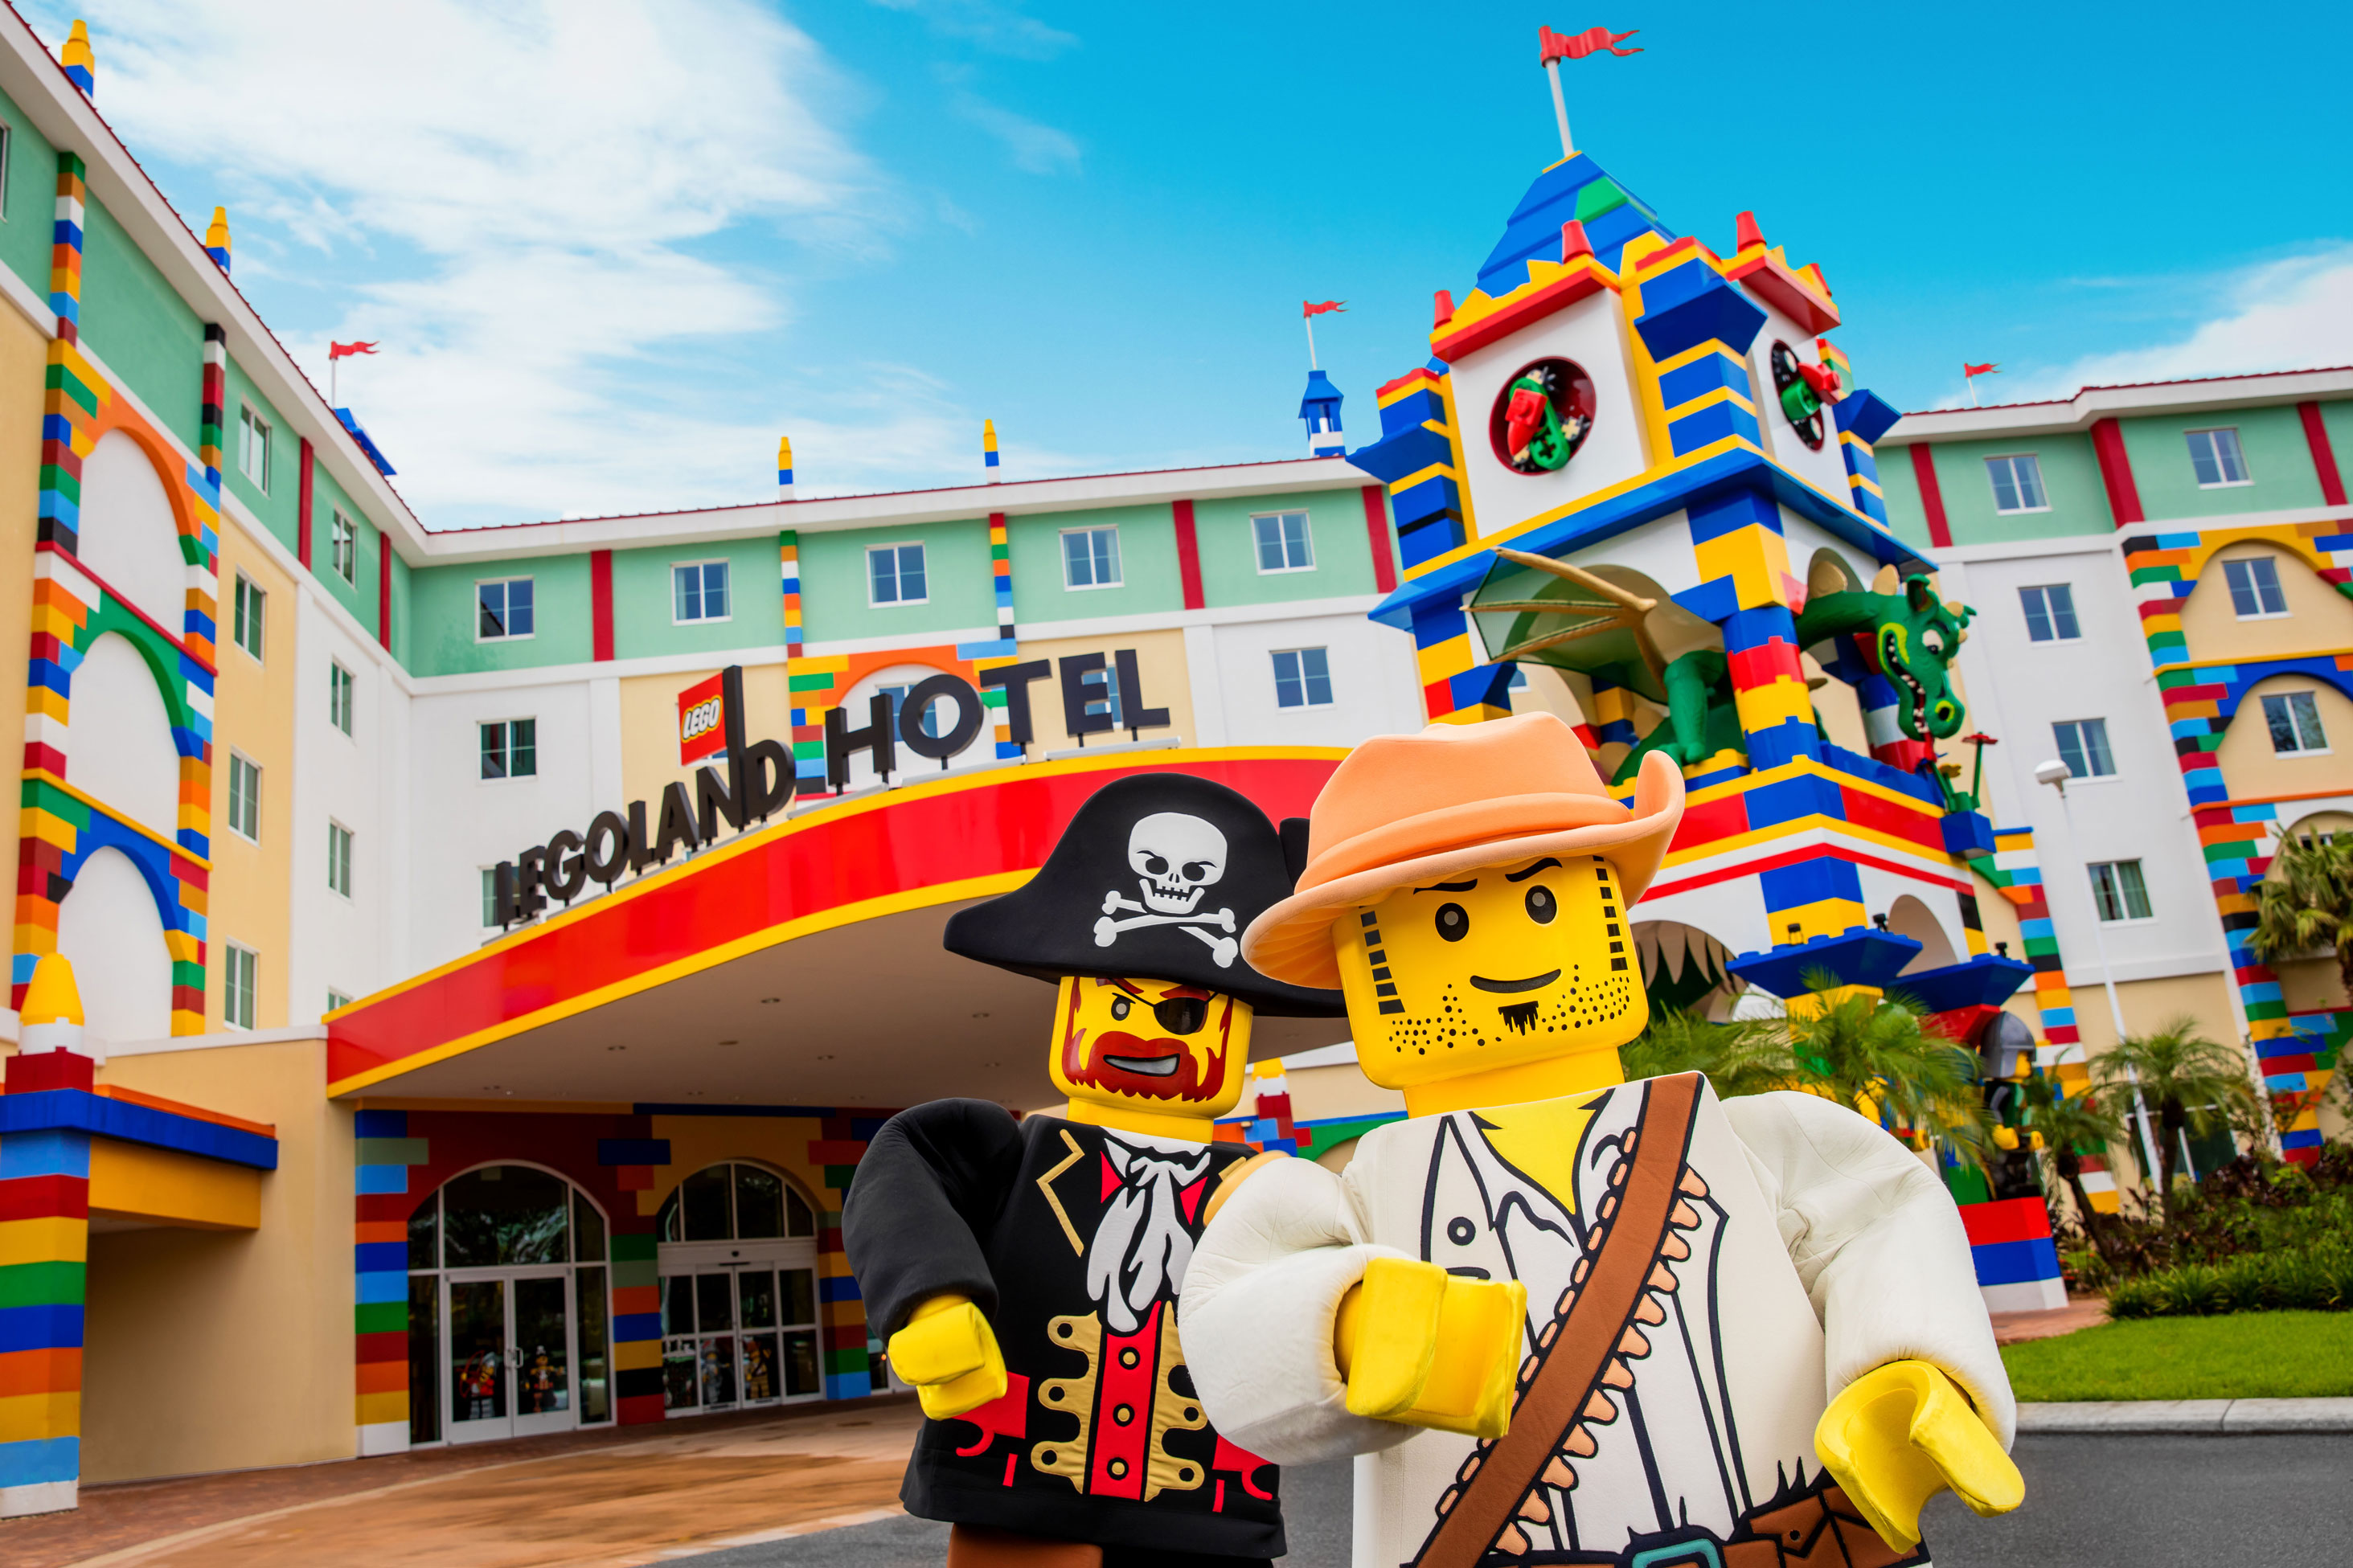 Legoland Hotel | Vacation Planning | Legoland Florida Resorts